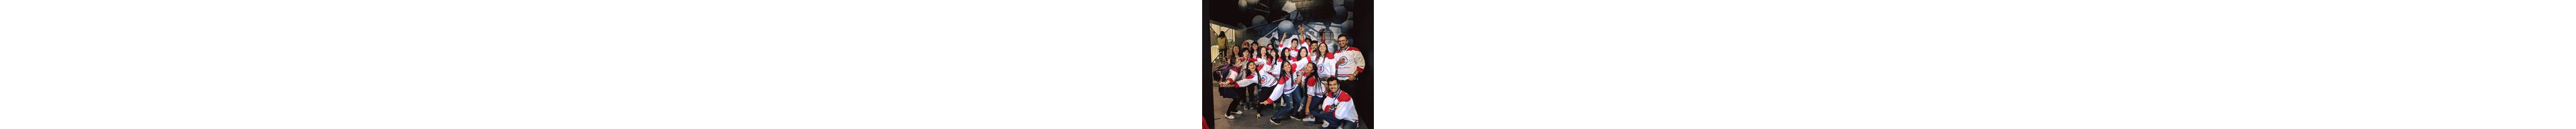 Un grupo alegre de estudiantes con jerseys de hockey posando para una foto de celebración, con expresiones vibrantes.